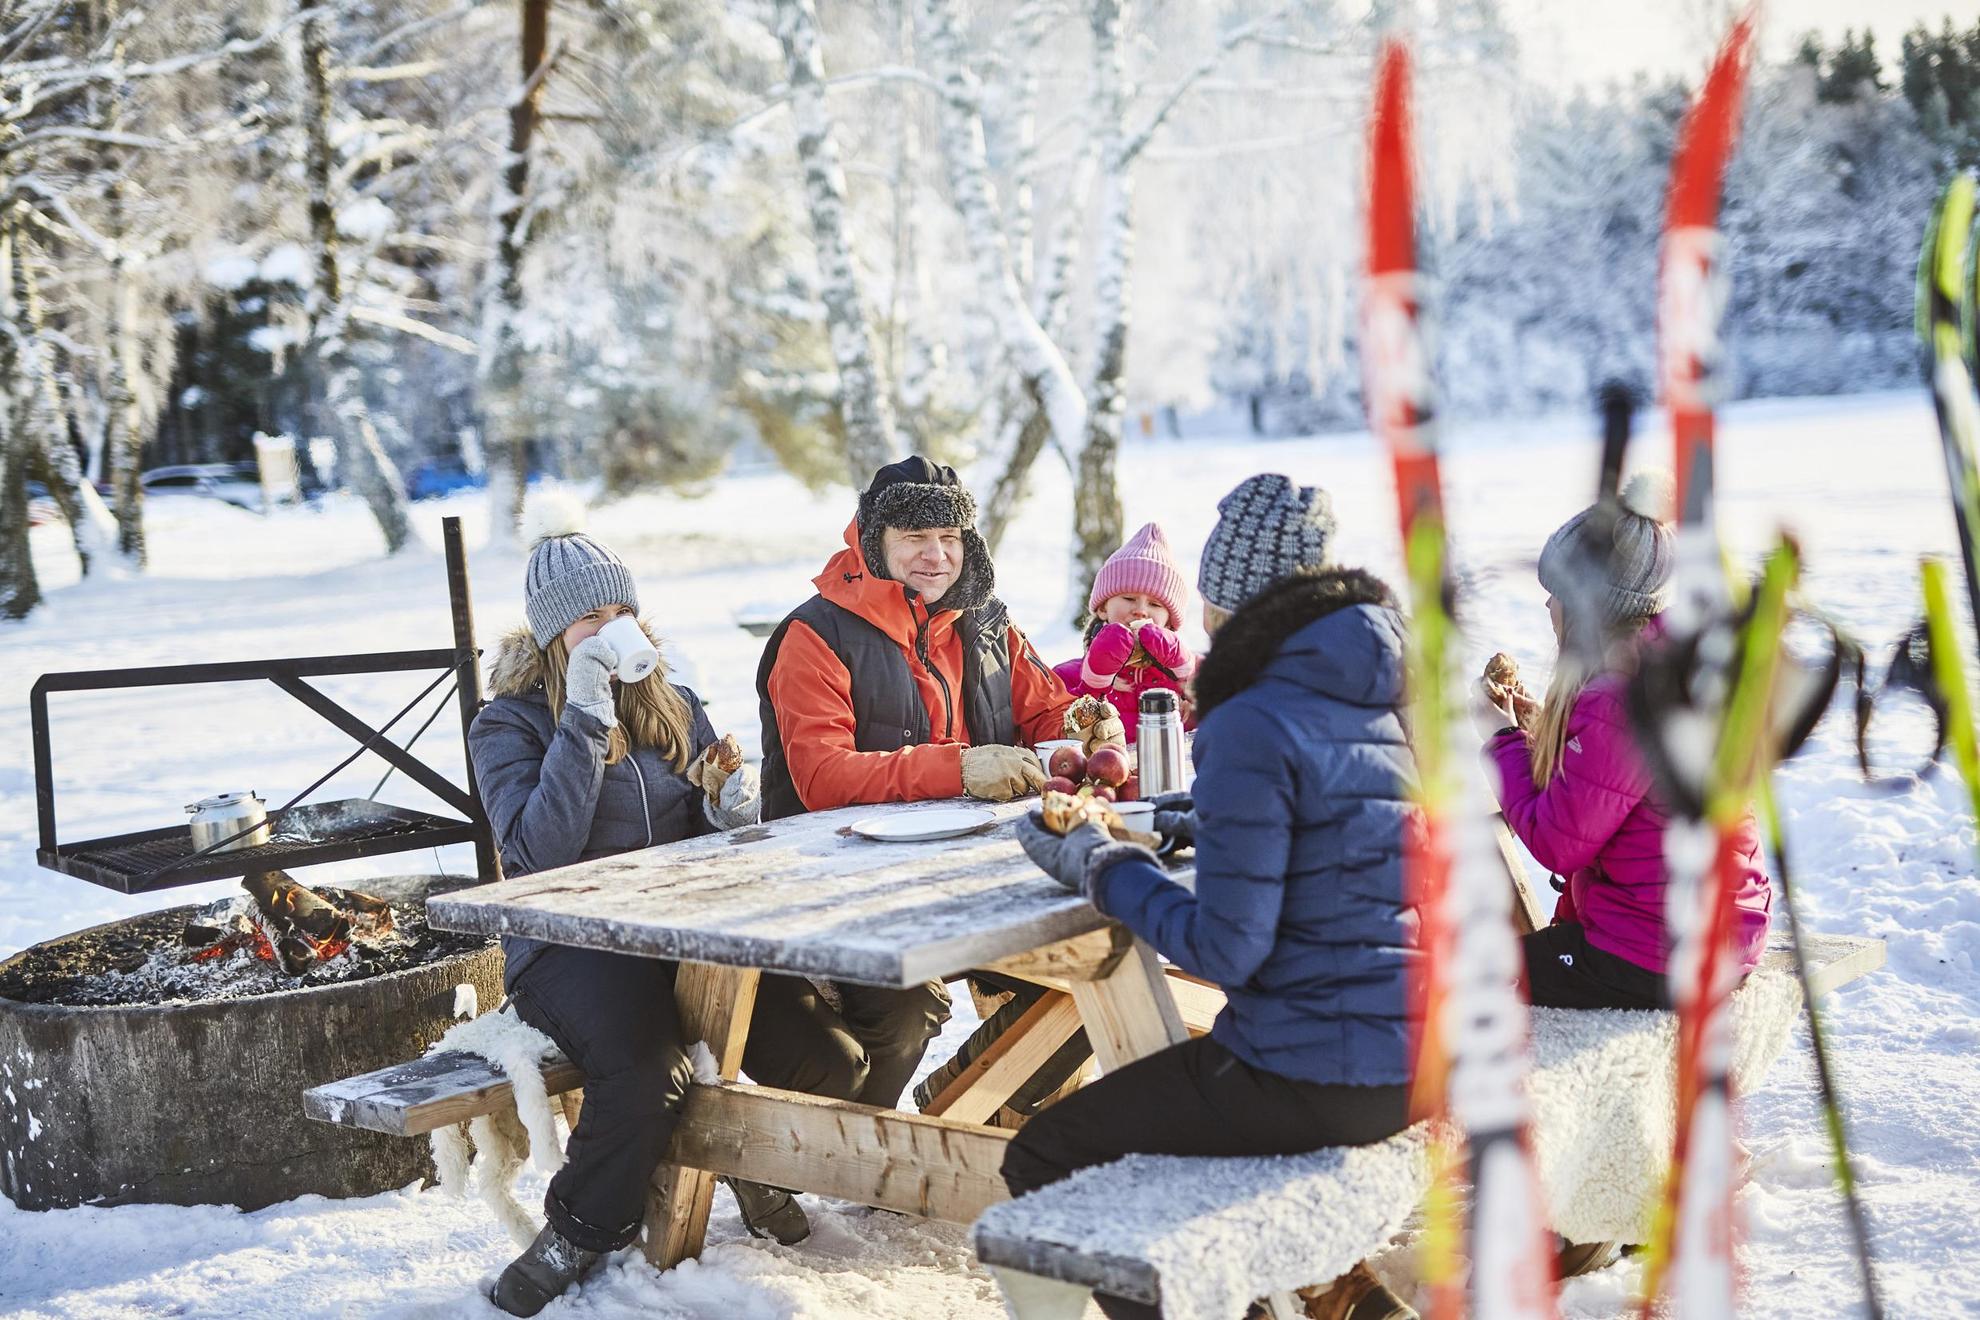 Une famille de cinq personnes assise dehors à une table, mangeant des brioches à la cannelle et buvant du café. Il y a des skis au premier plan de la photo.